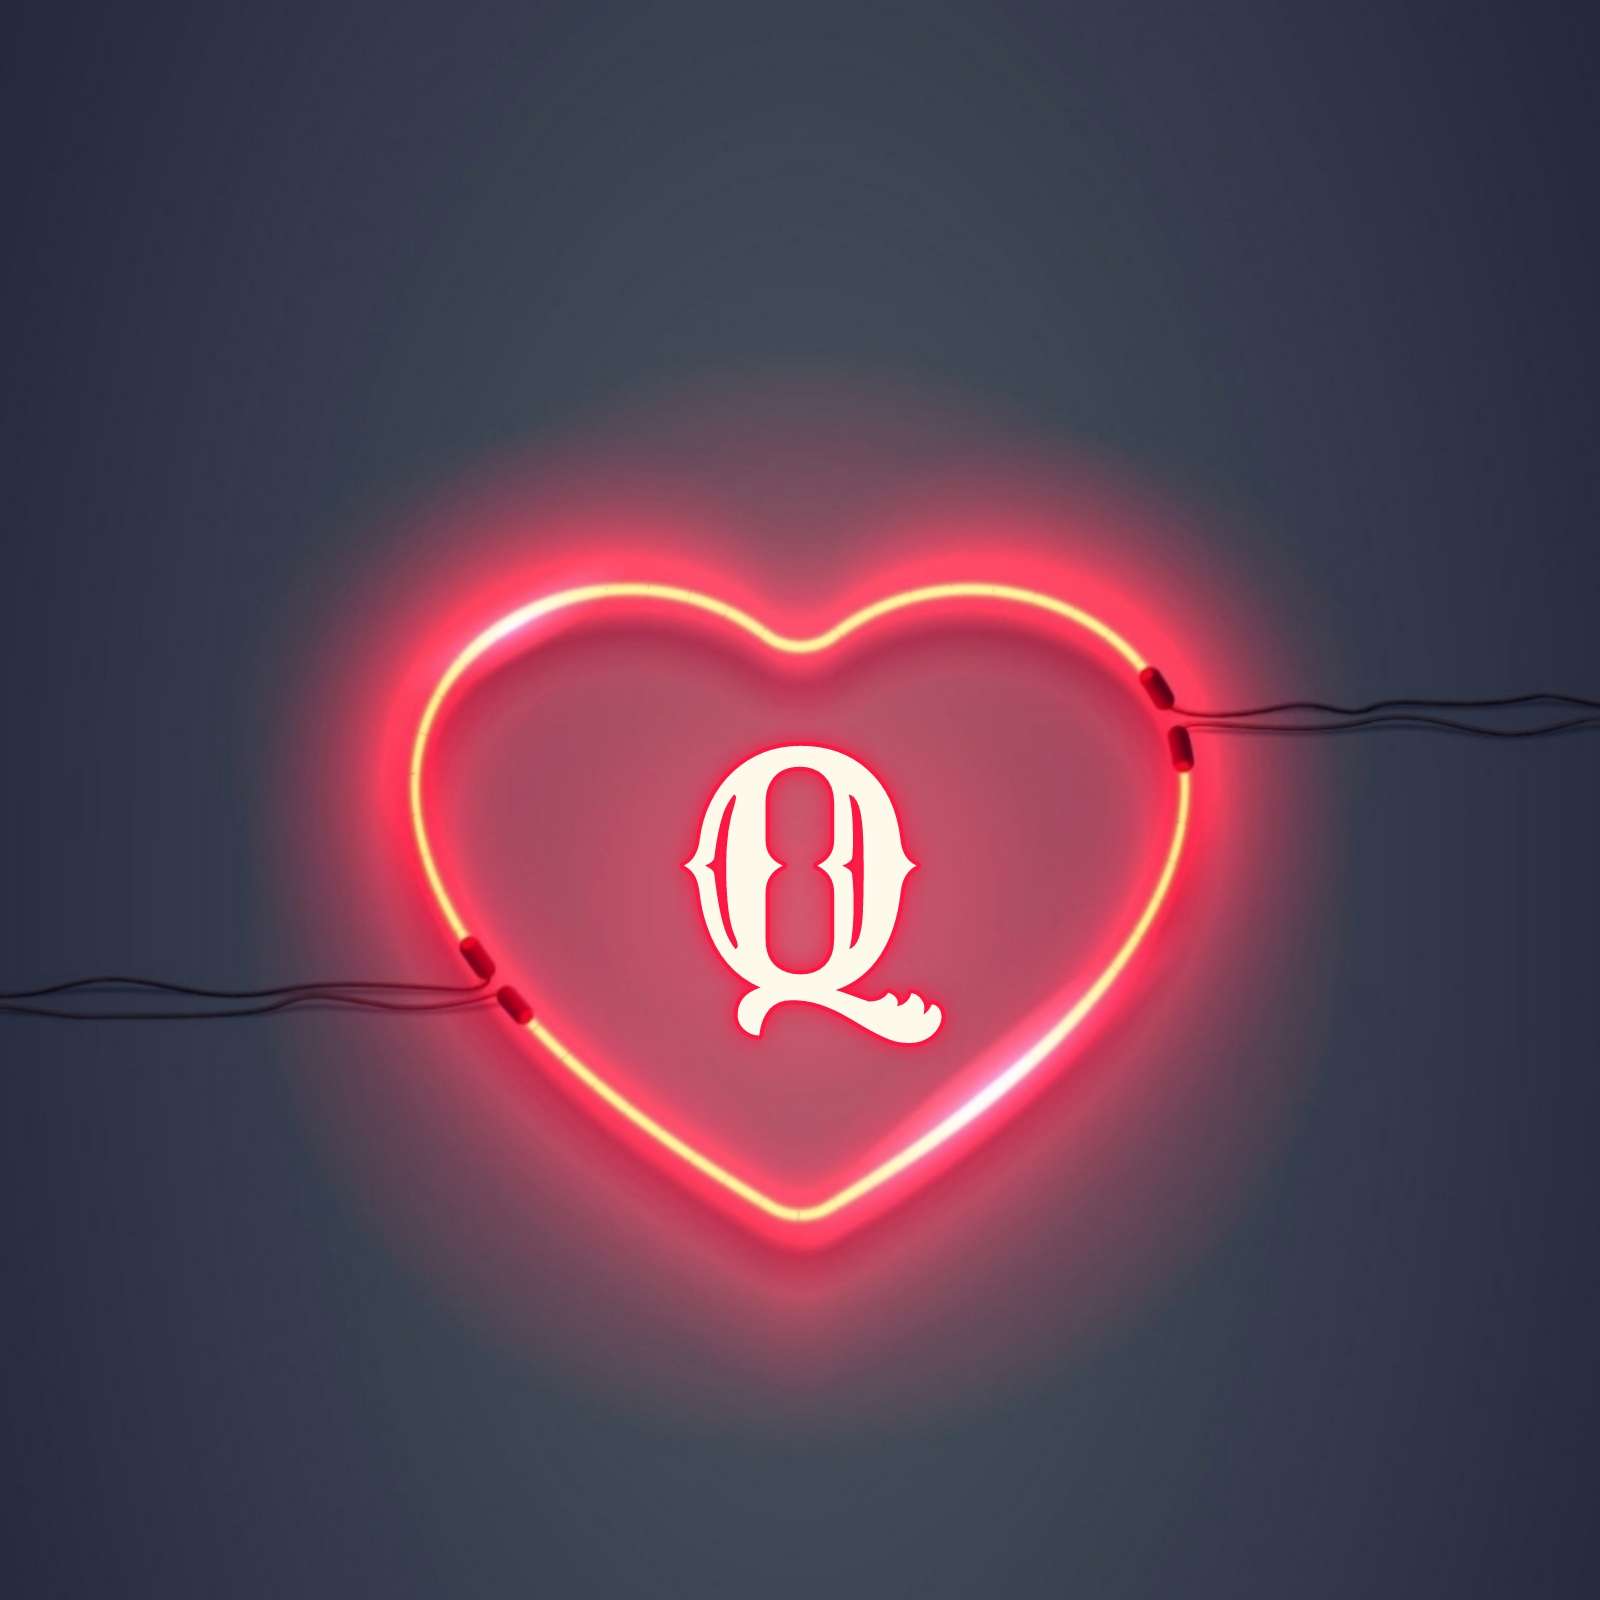 Q Name Love DP Image Download